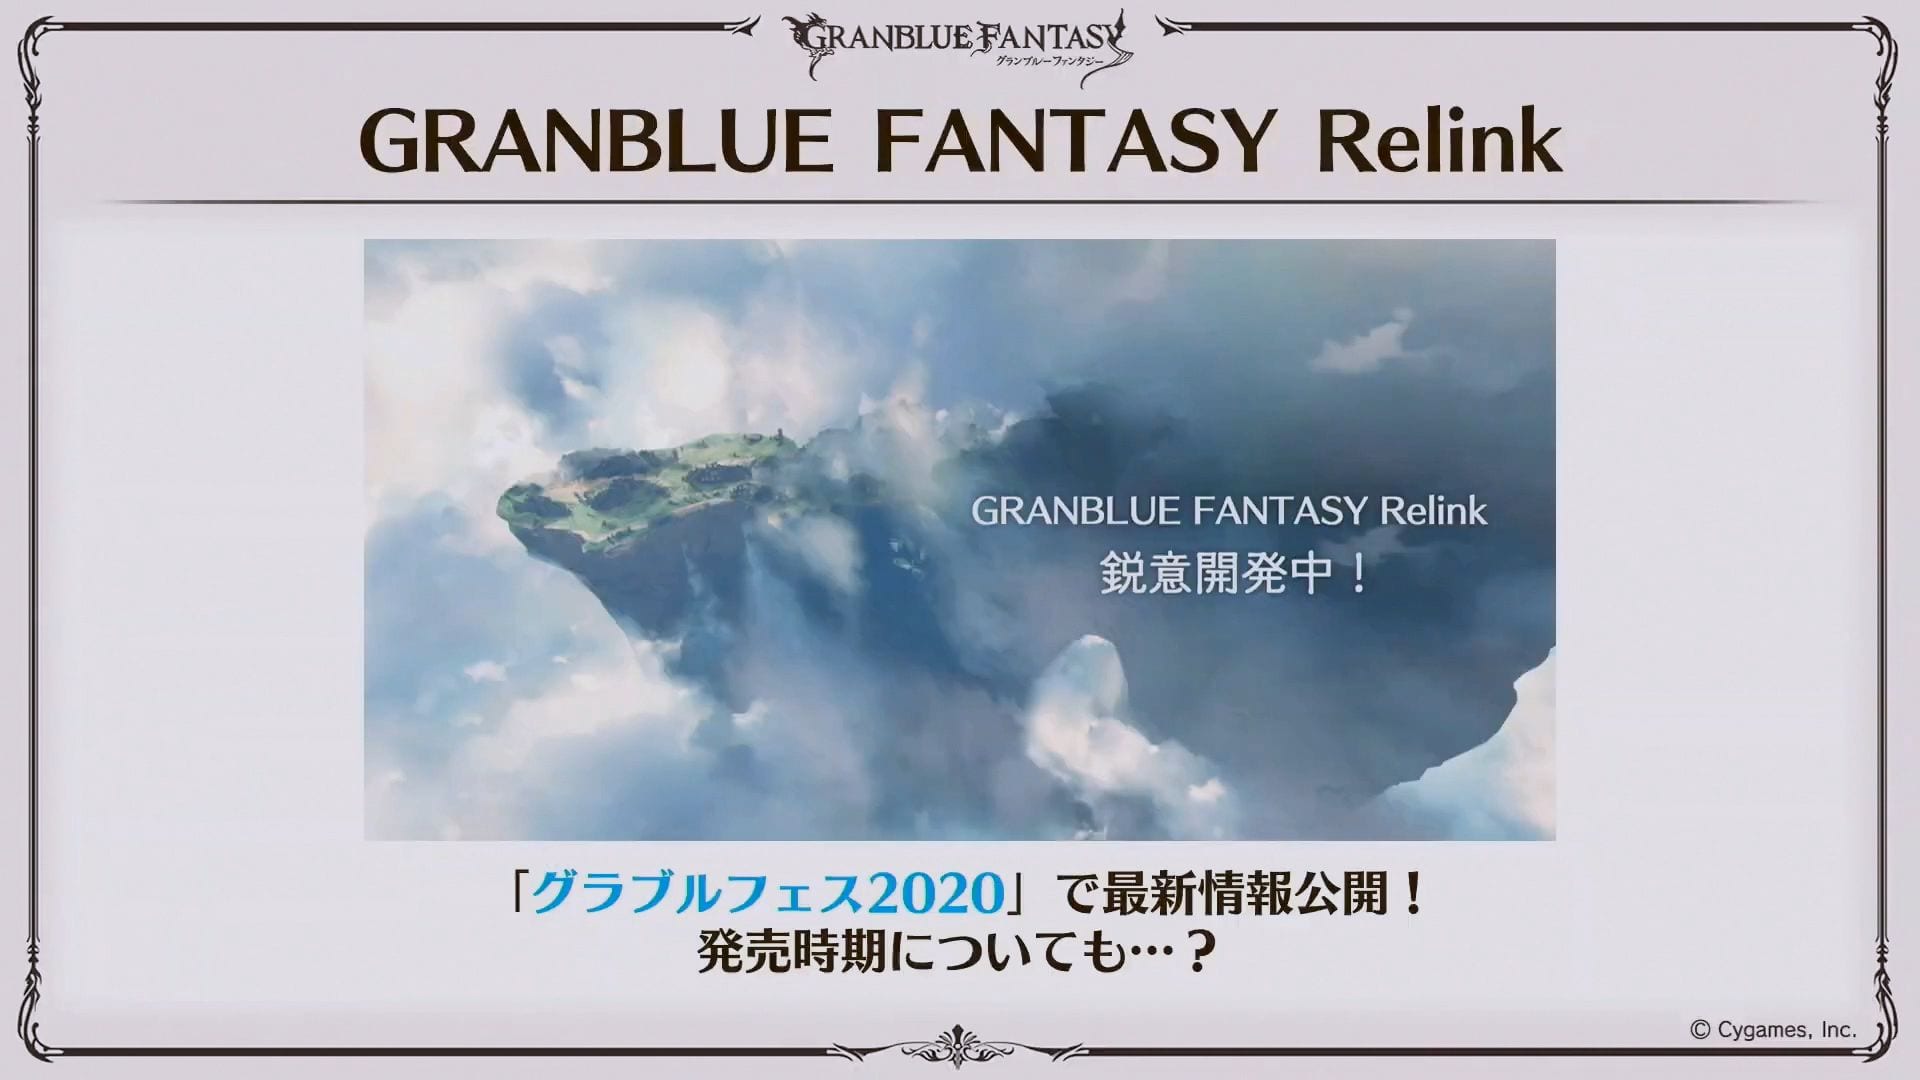 Granblue Fantasy Relink coop campaign